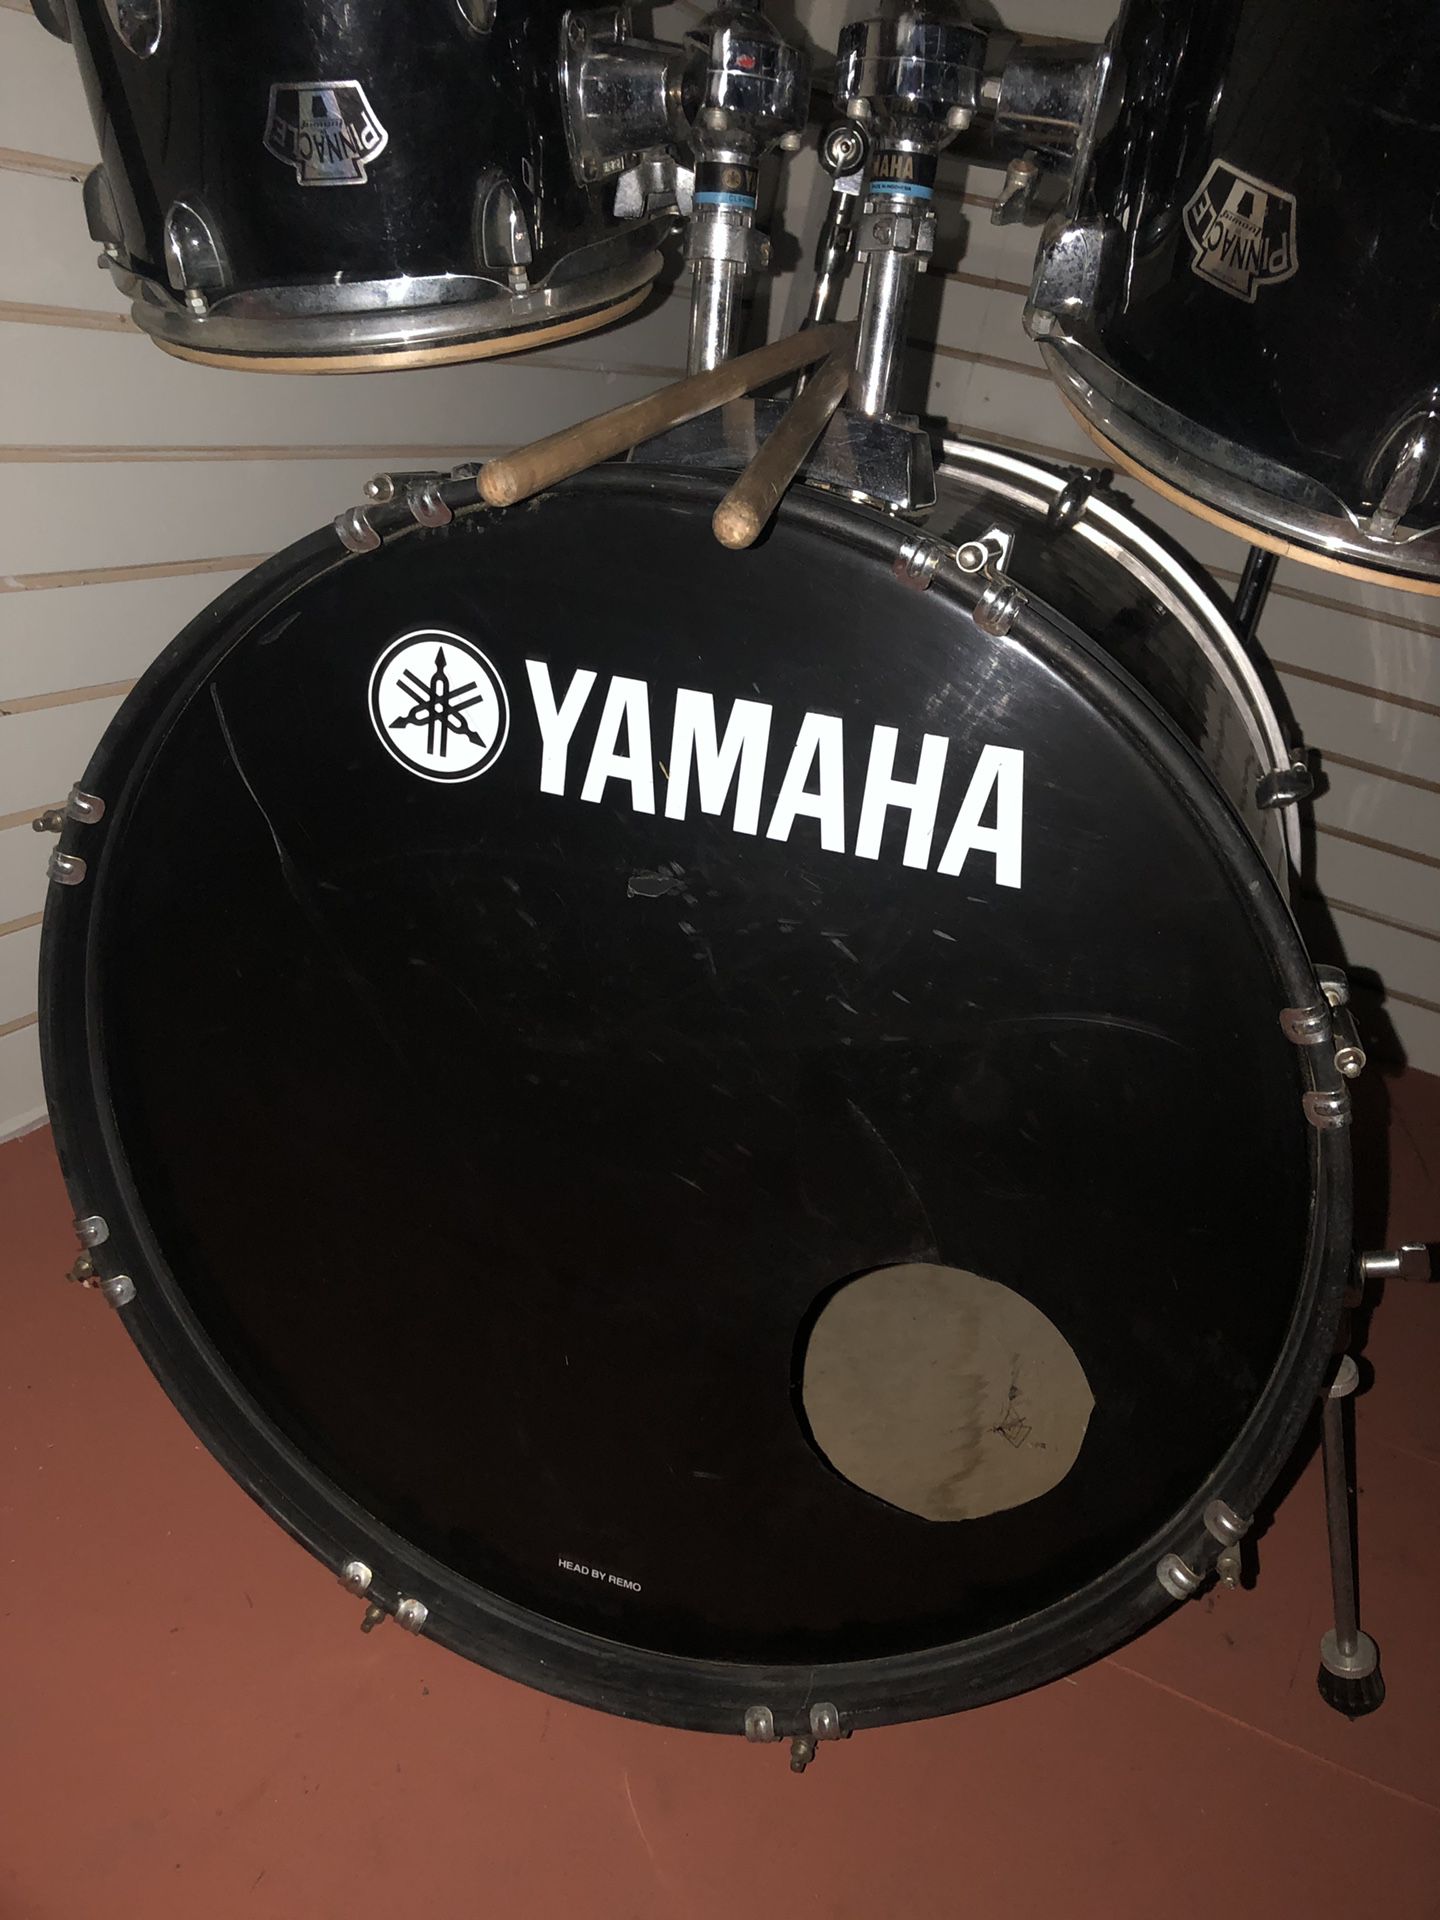 Yahama drum set